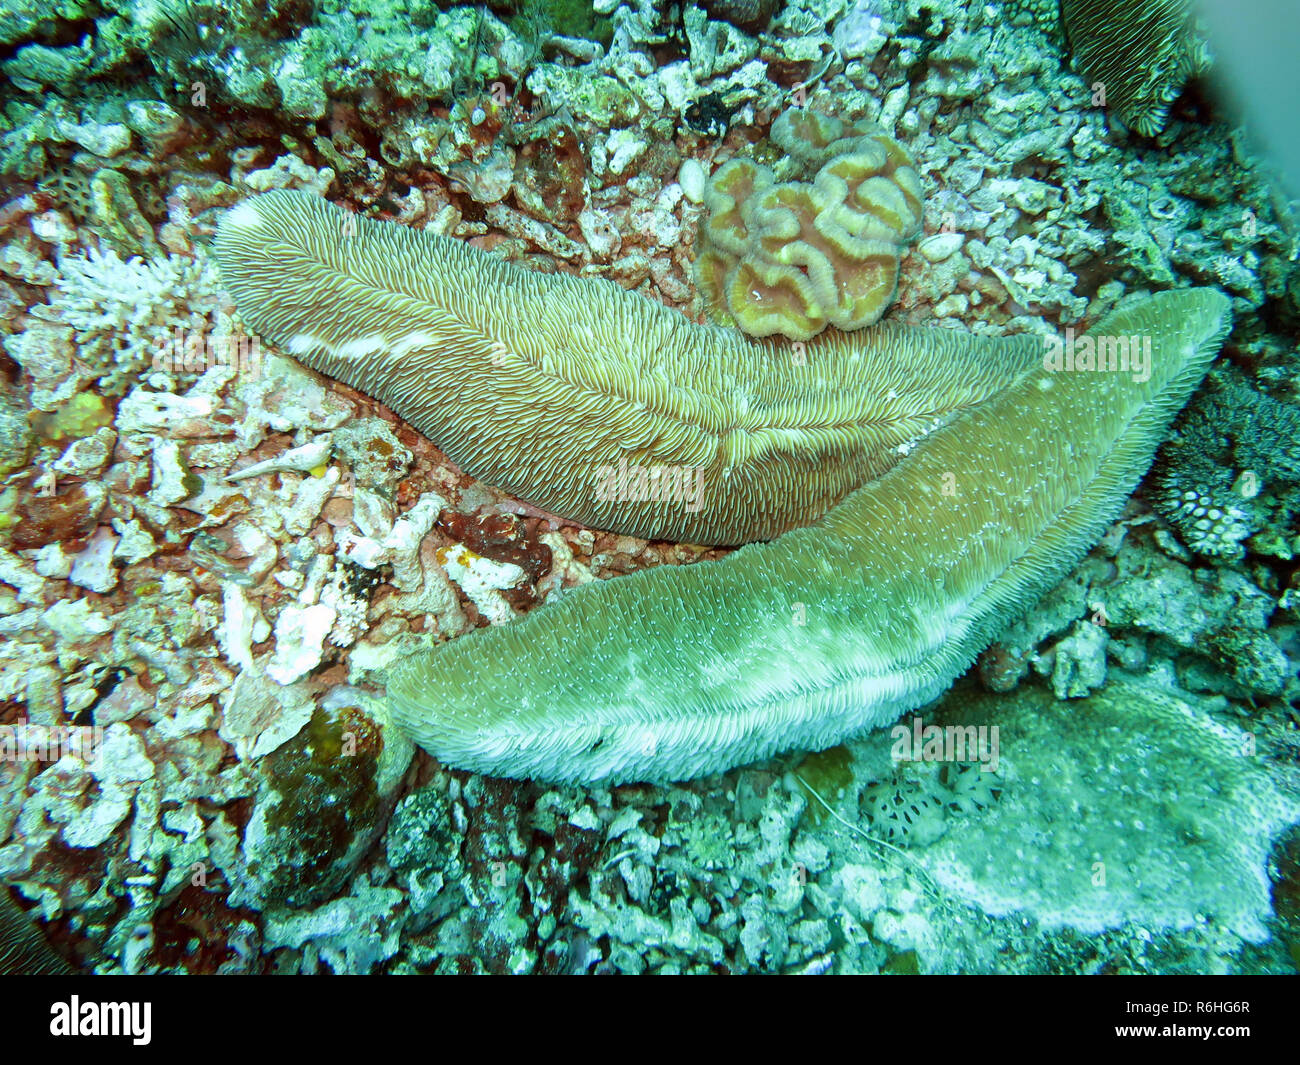 Allungate il corallo a fungo (ctenactis echinata) Foto Stock